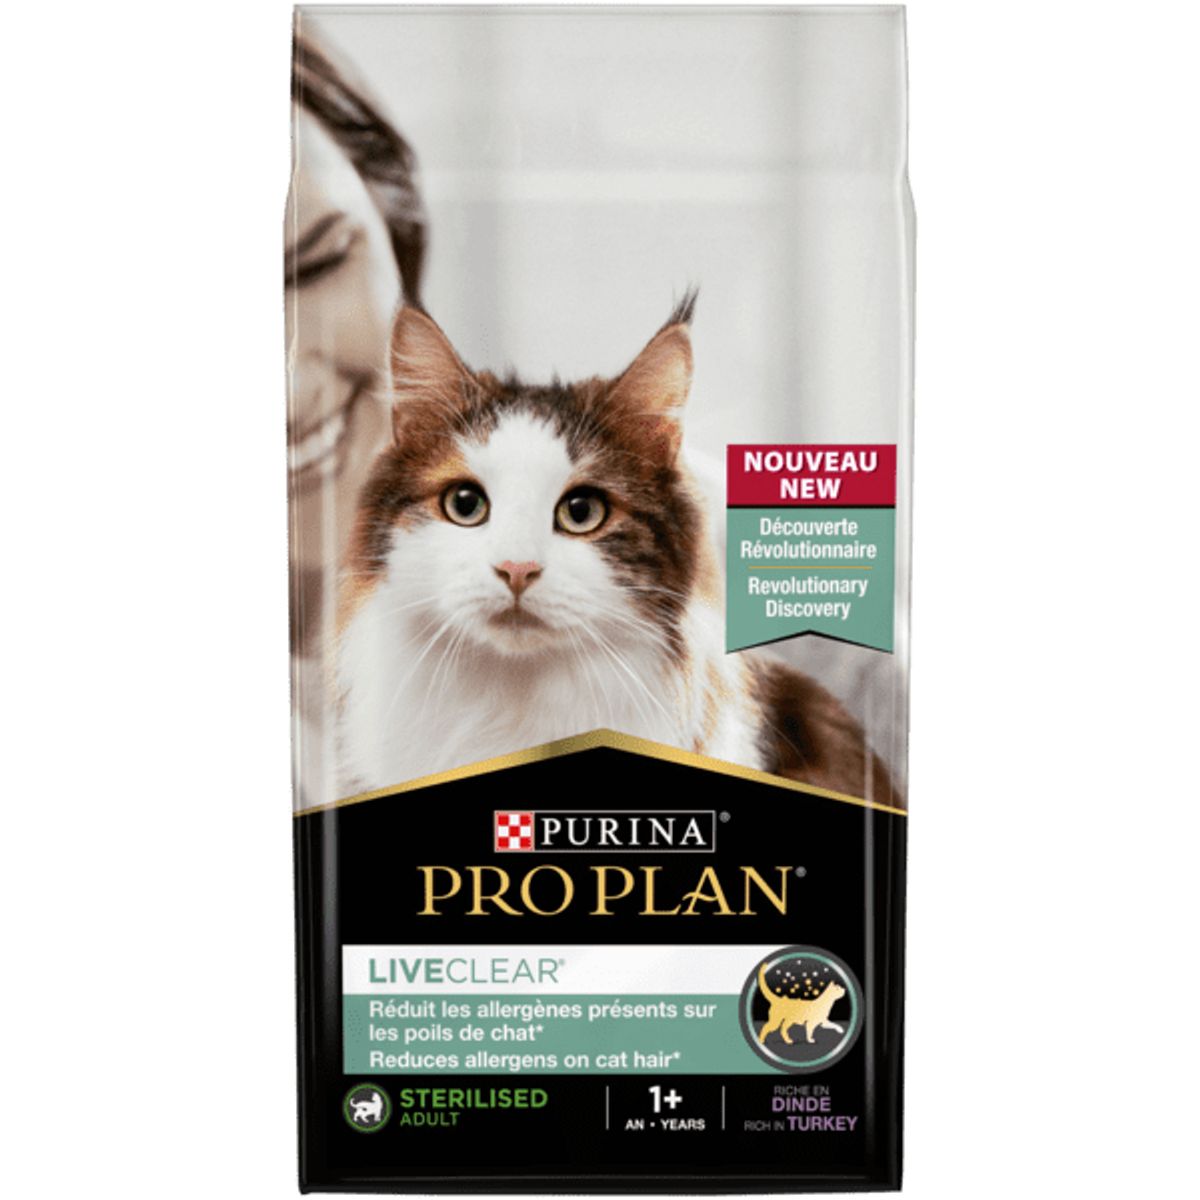 Pro Plan Cat Liveclear Sterilised Adult riche en Dinde - Nestlé